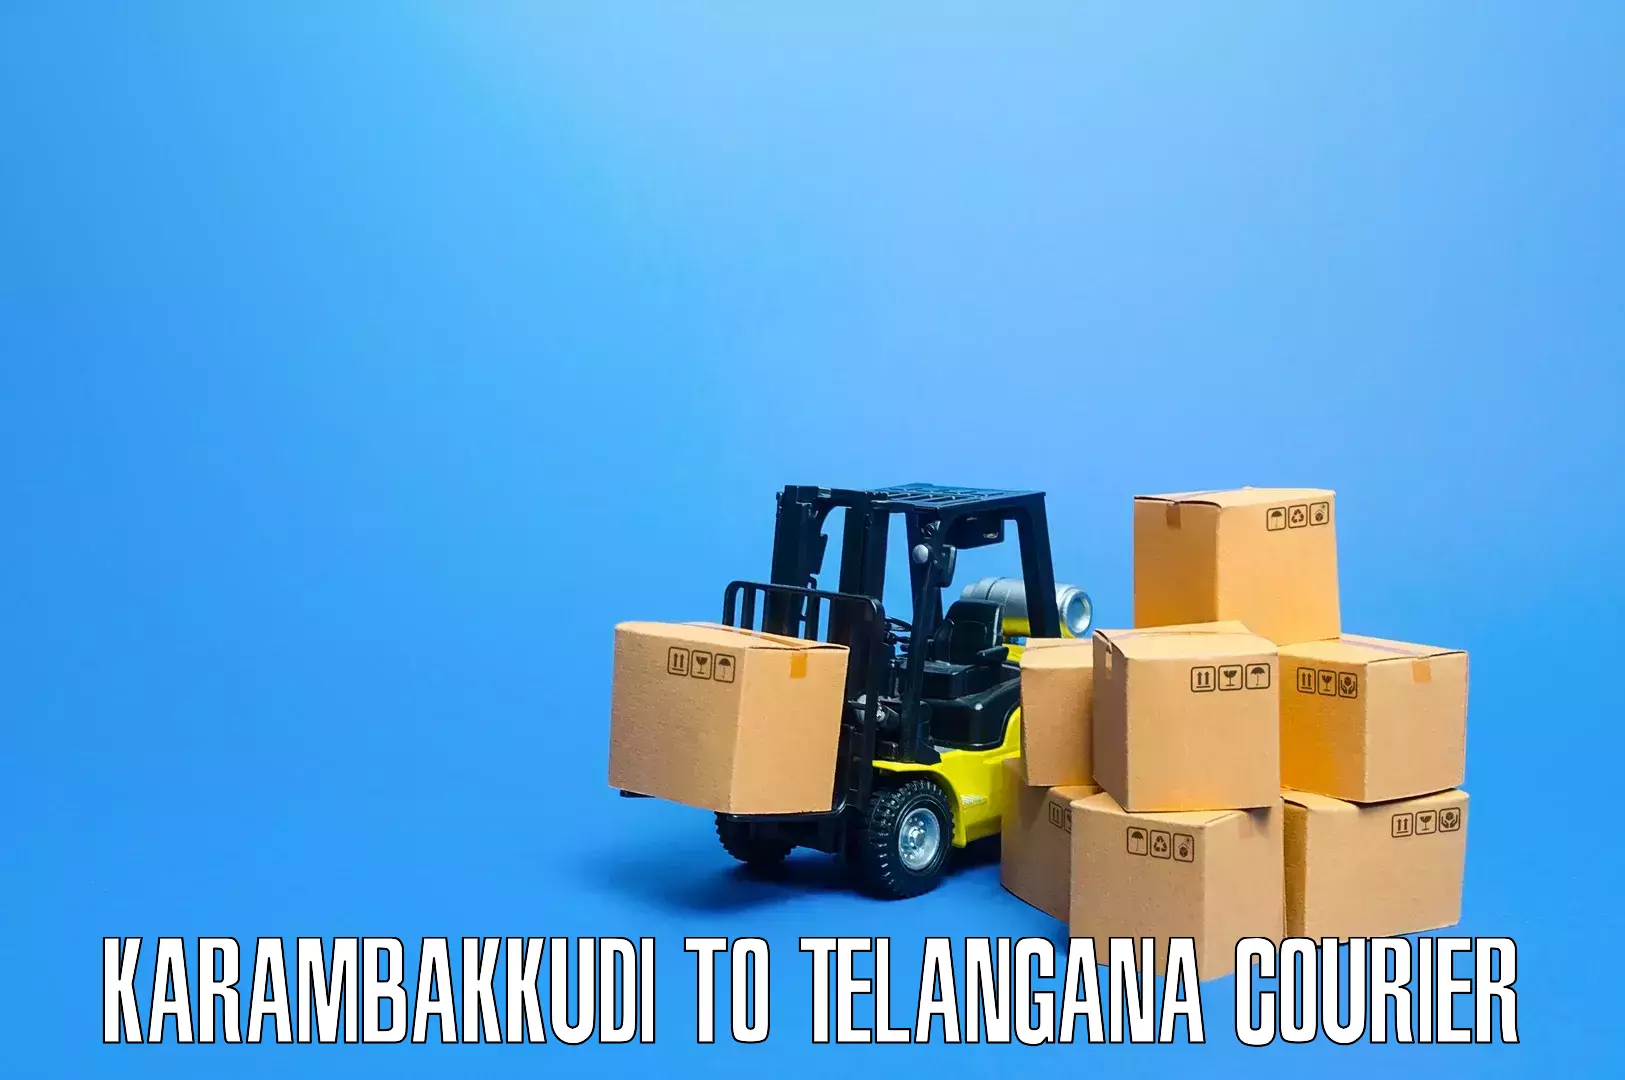 Quality furniture transport Karambakkudi to Bodhan